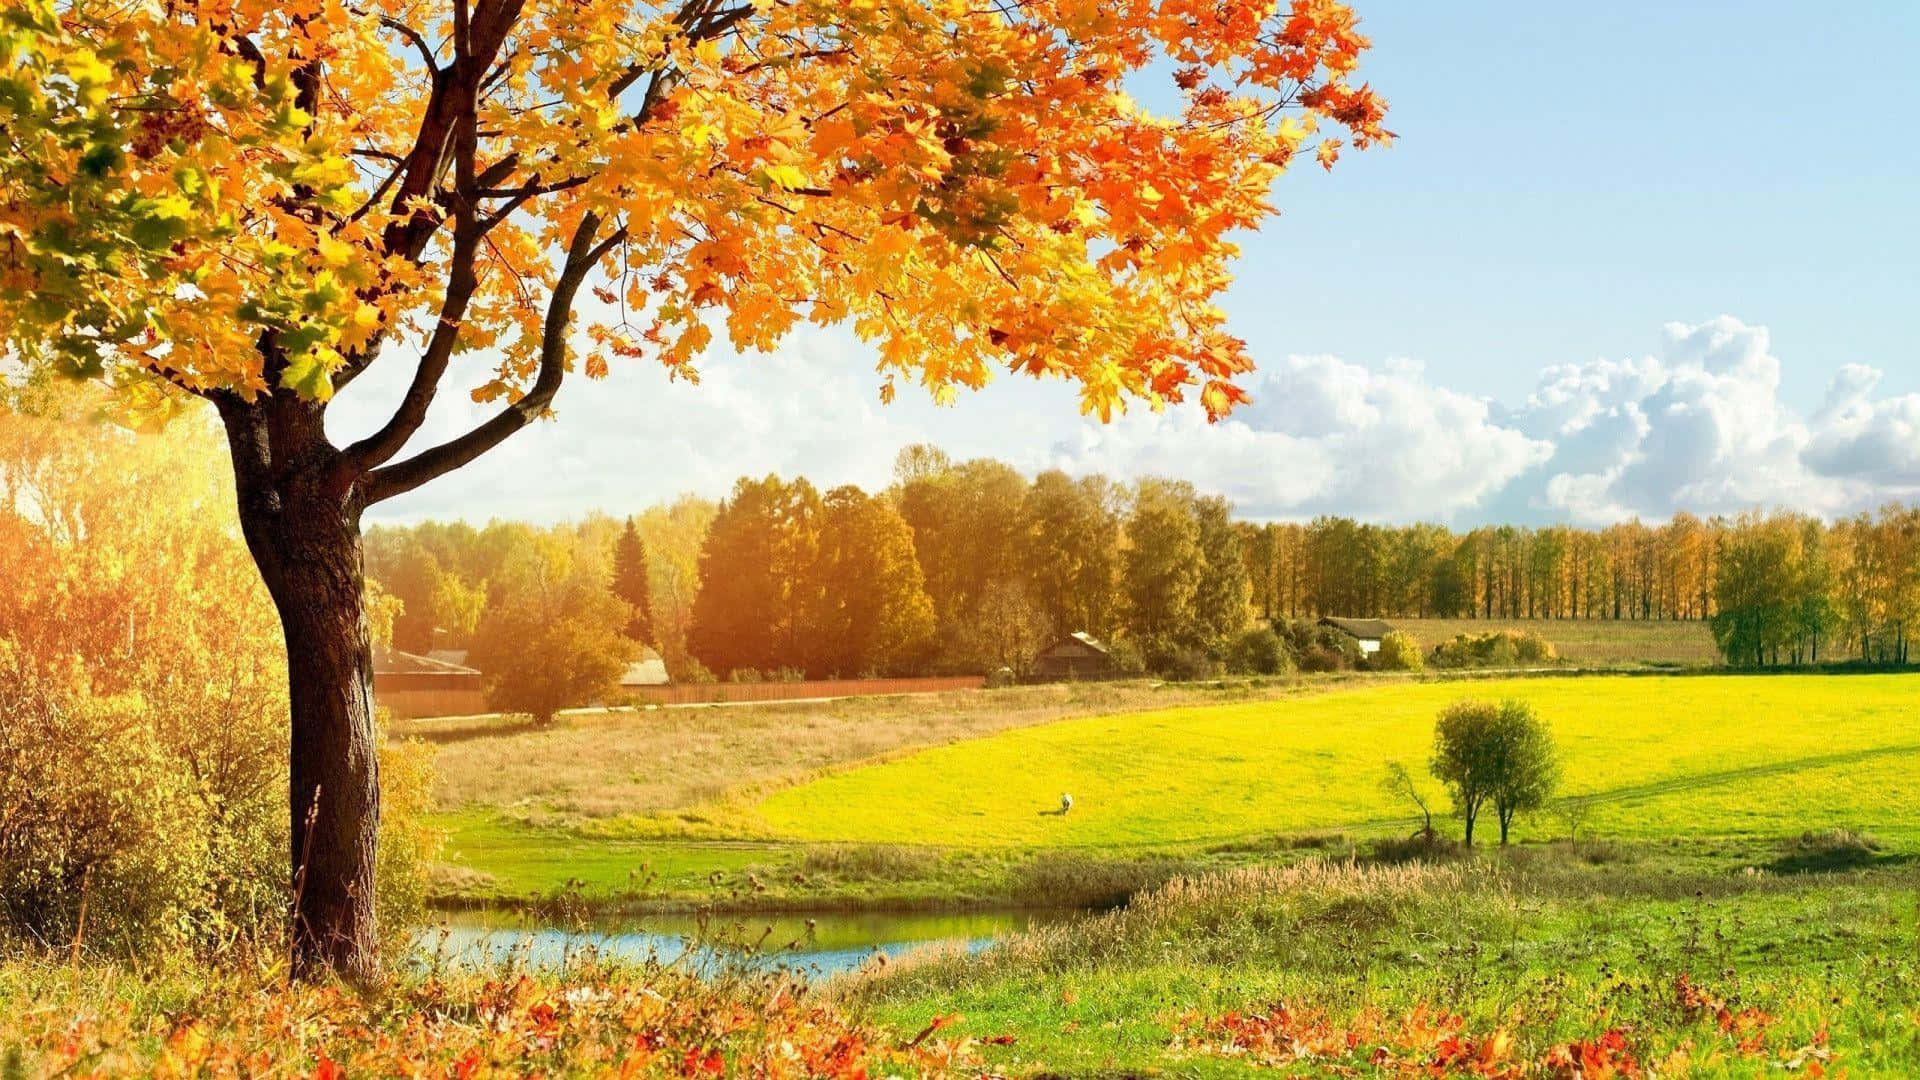 Mesmerizing Fall Landscape in Full Bloom Wallpaper